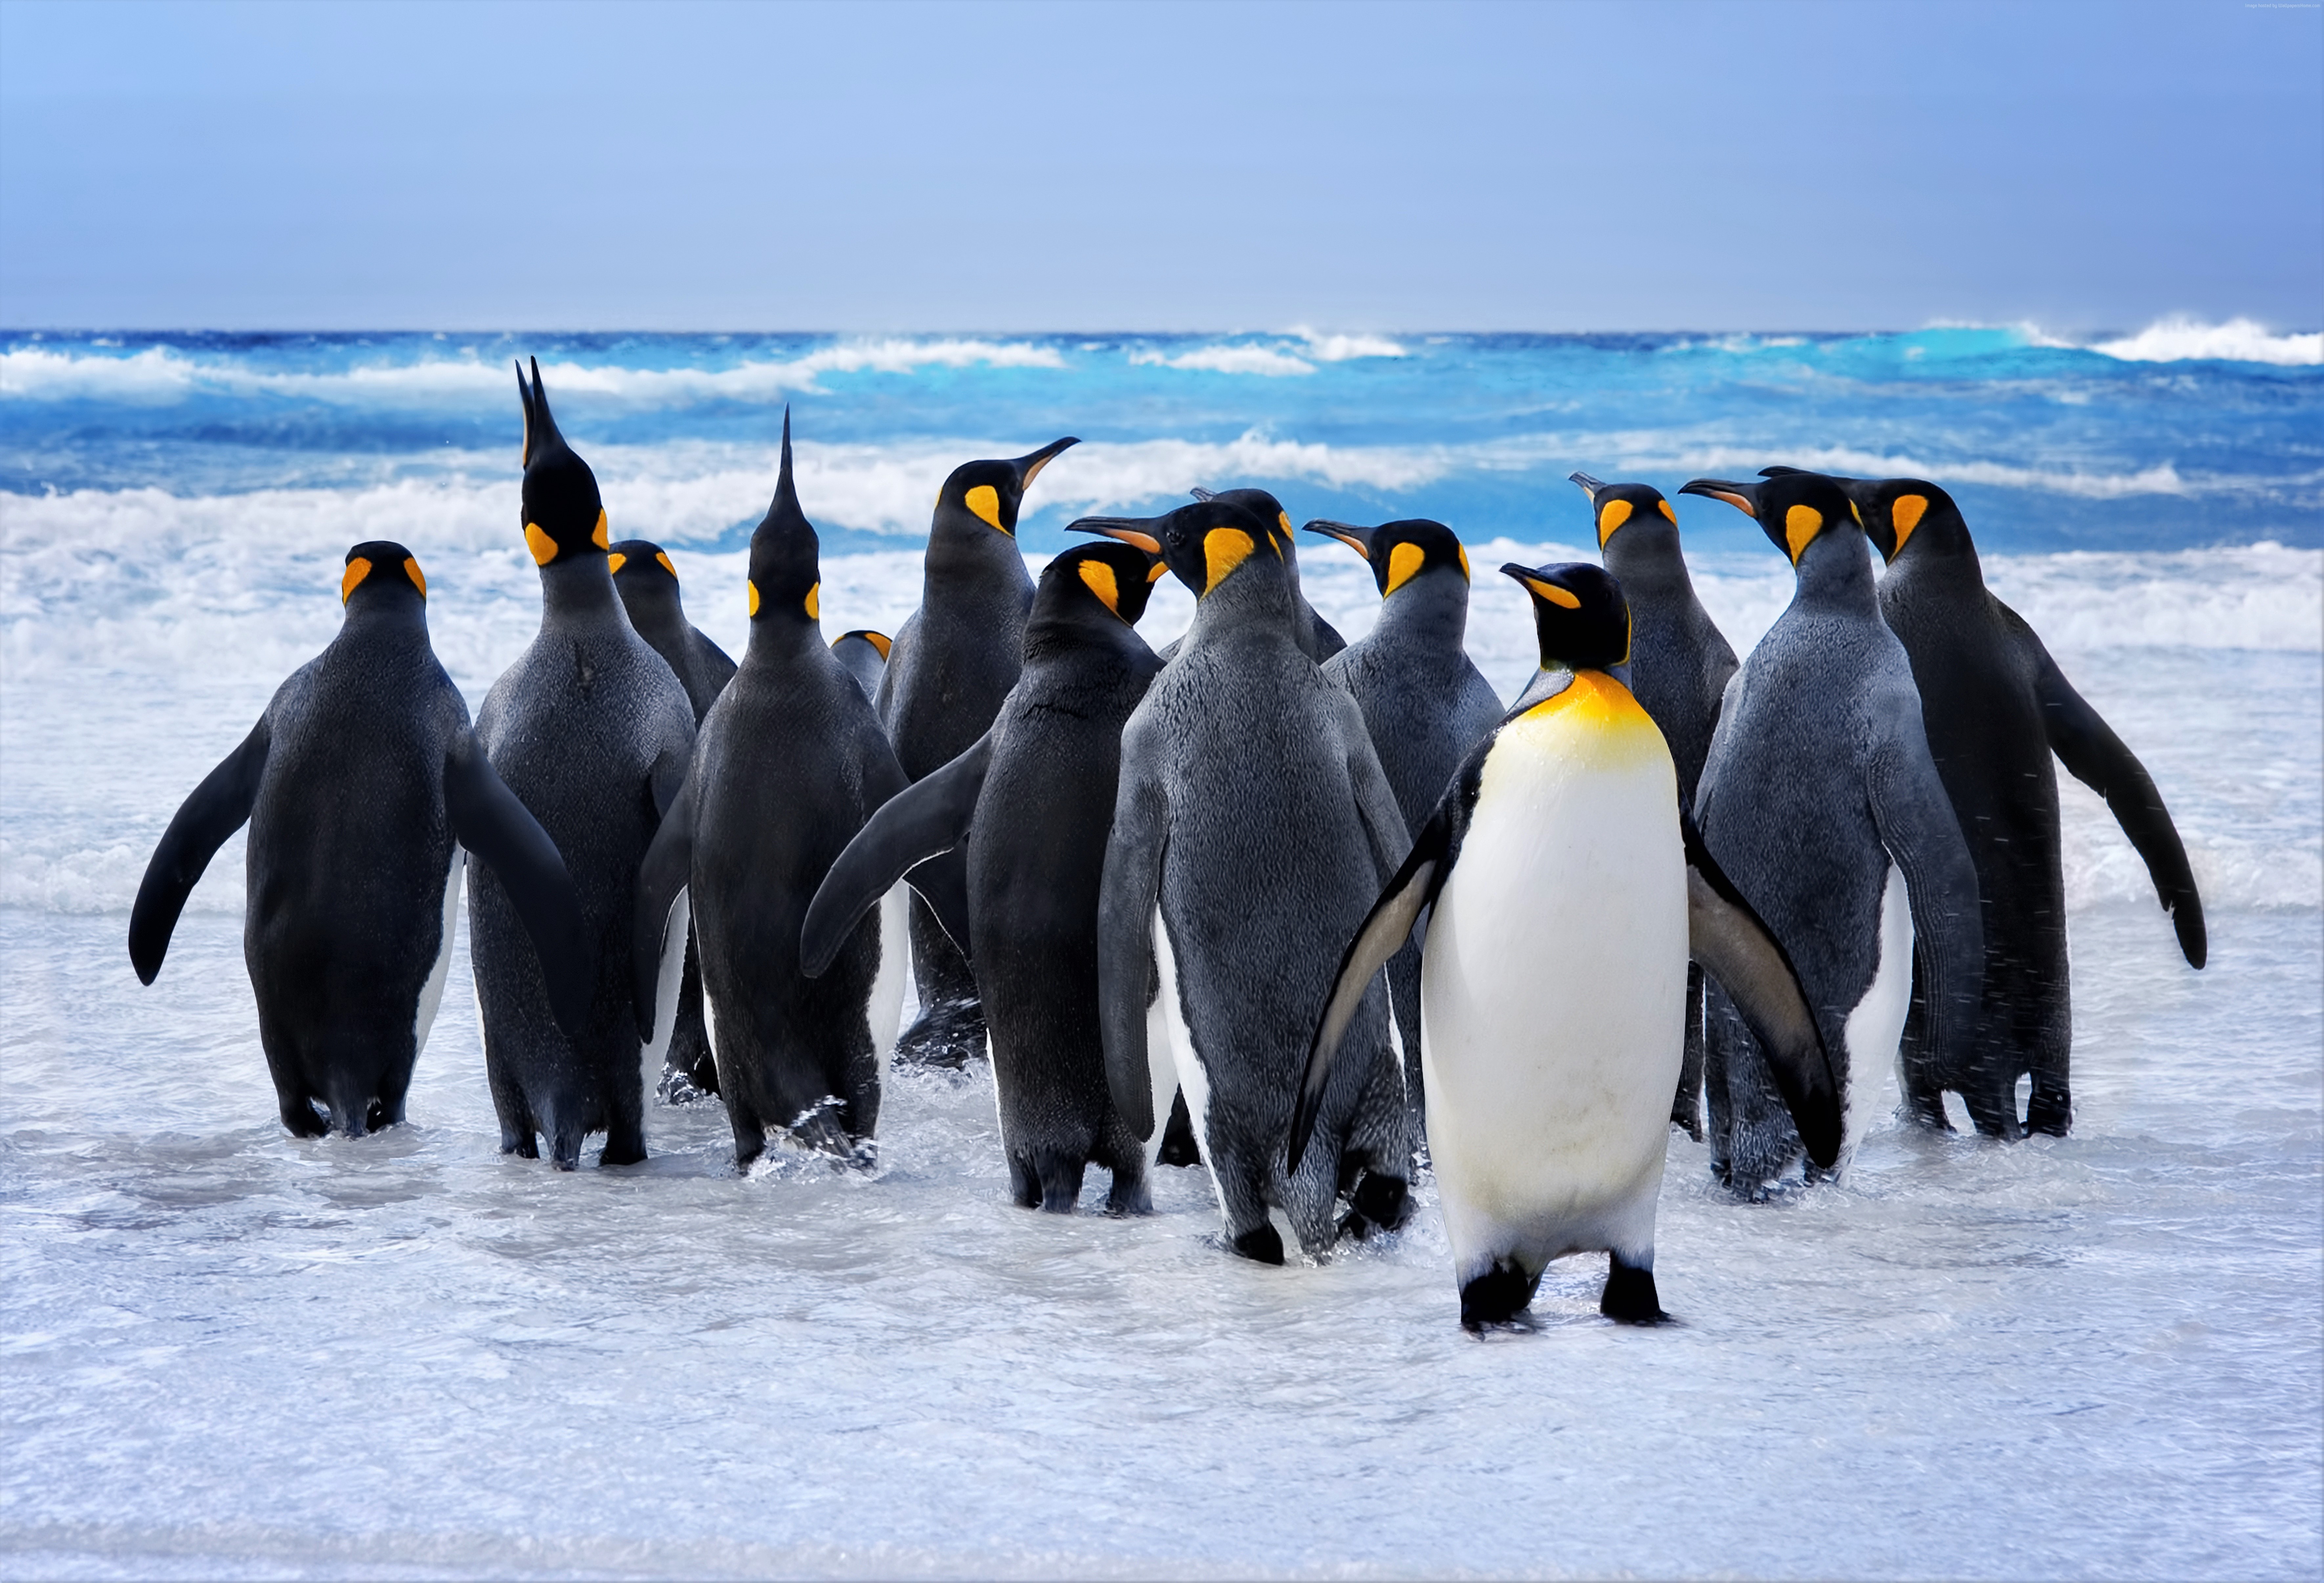 Скачать обои Королевский Пингвин на телефон бесплатно